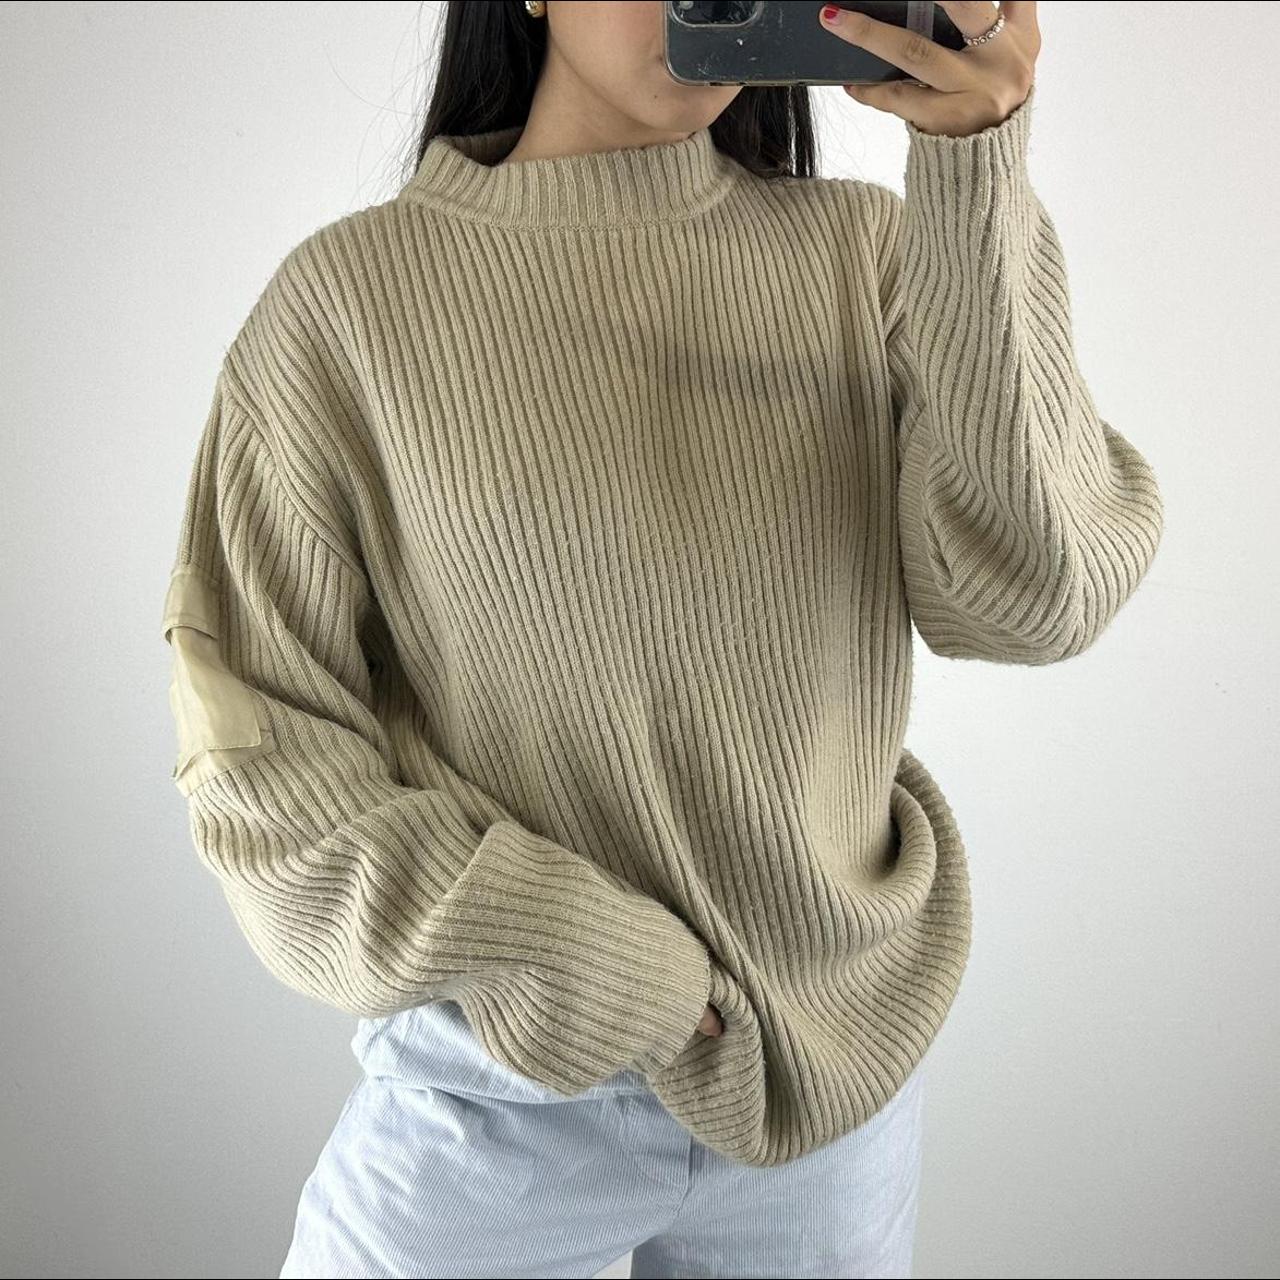 Insane vintage beige utility knit jumper Model size... - Depop